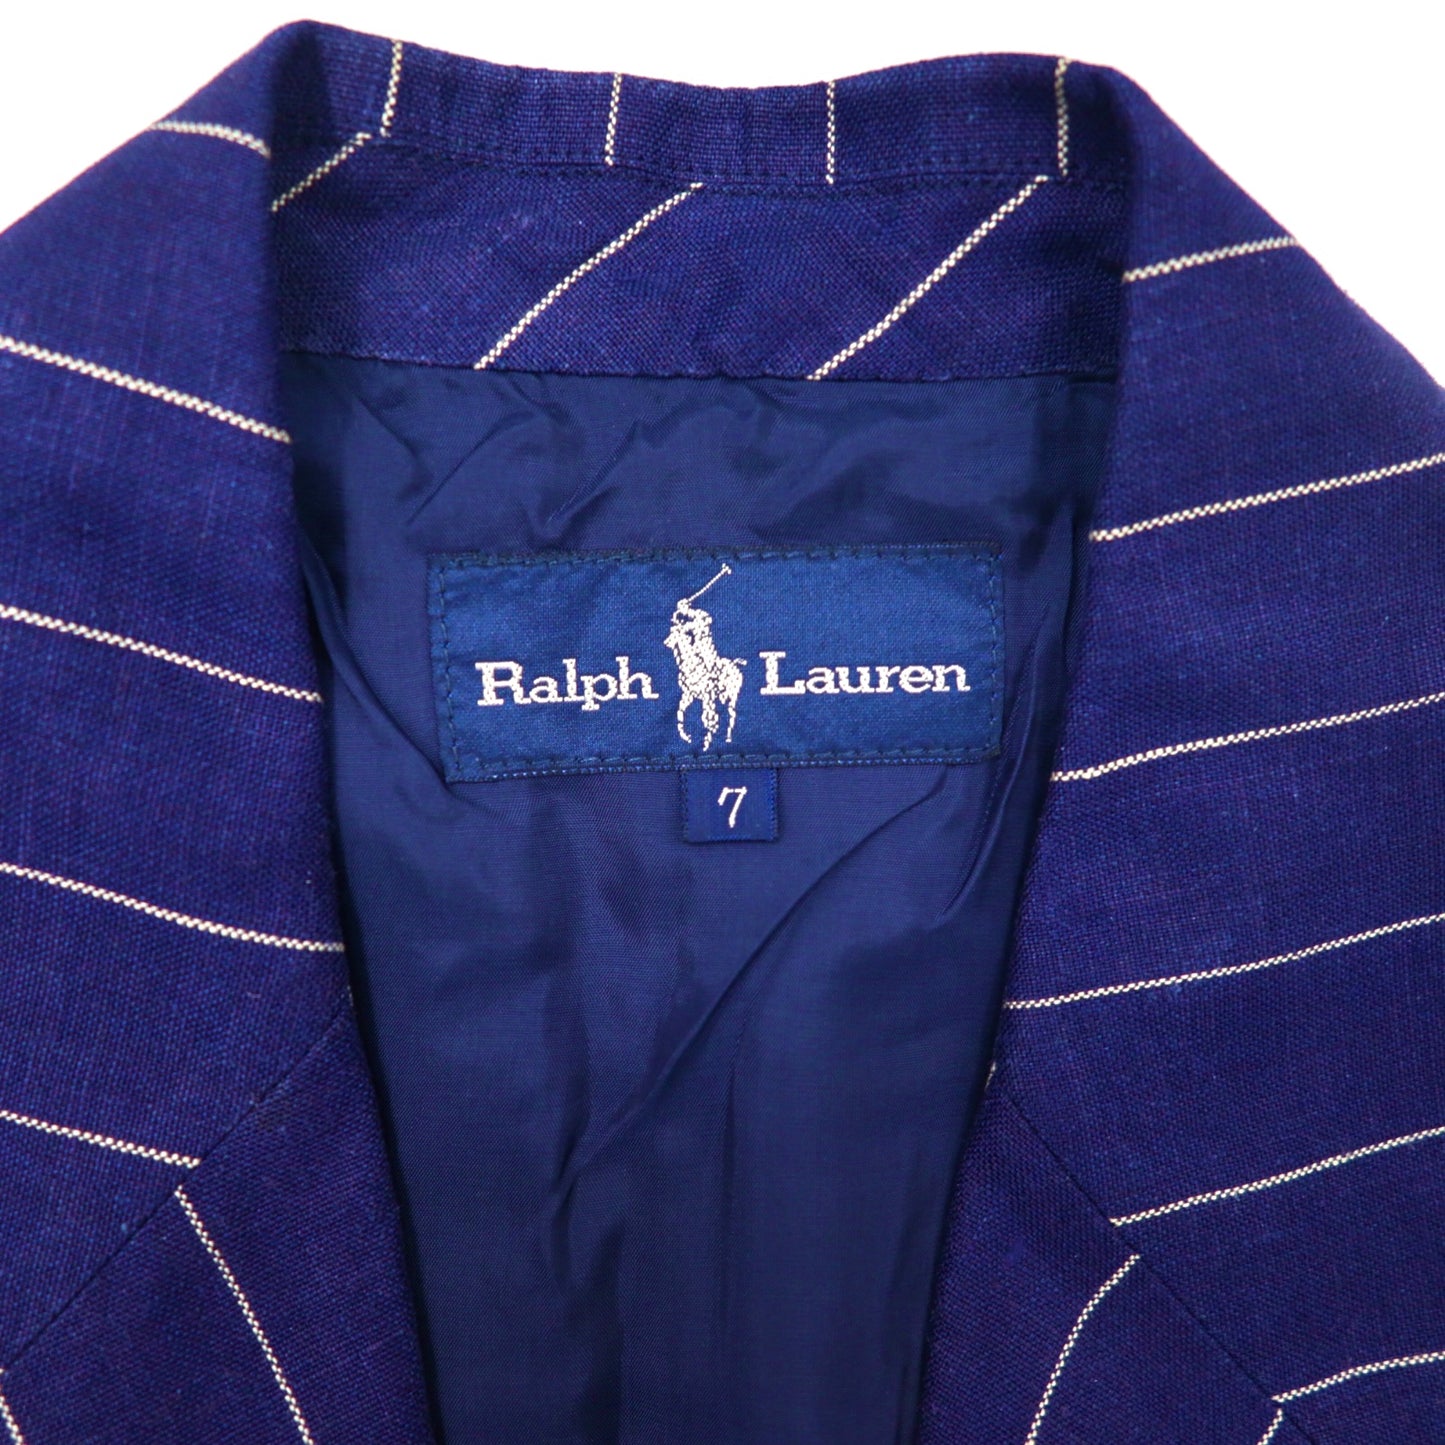 Ralph Lauren リネンテーラードジャケット 7 ネイビー ストライプ 金ボタン